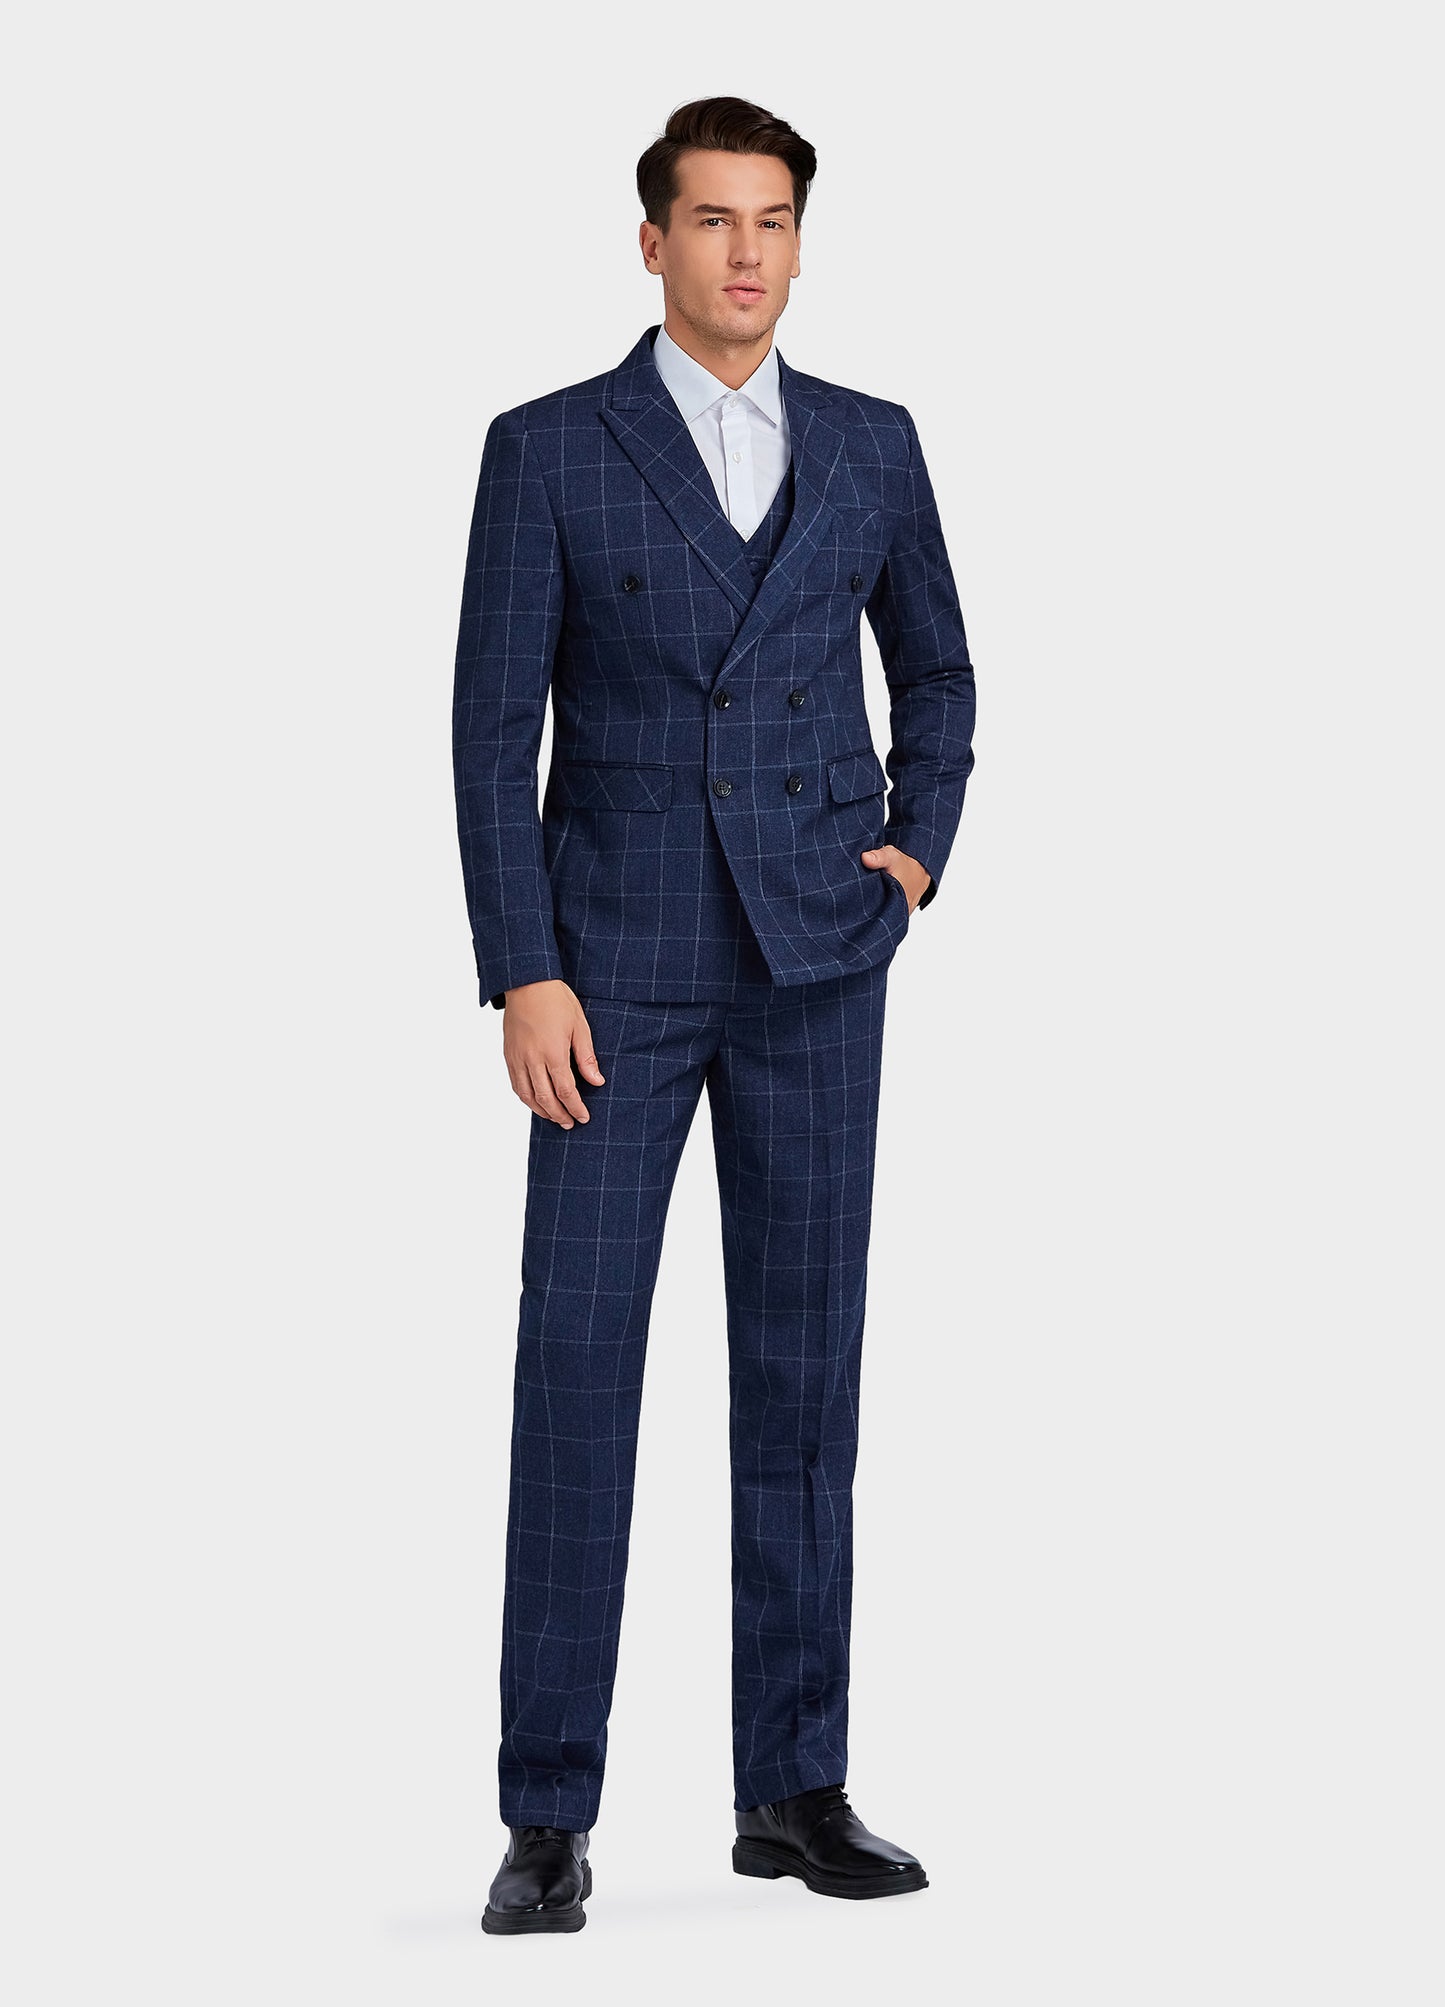 1PA1 Men's 3 Pieces Slim Fit Plaid Vested Suit, Wedding Tuxedo - Two Button Jacket, Vest & Pants